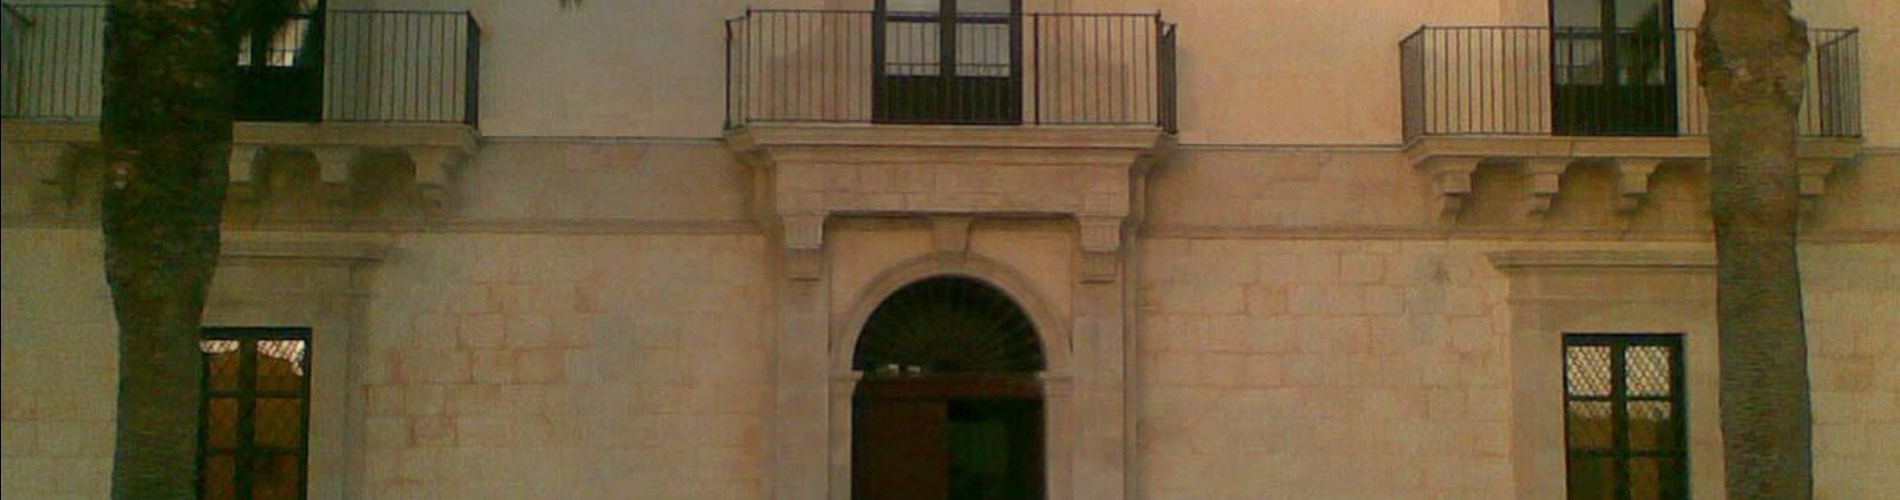 Villa Tedeschi